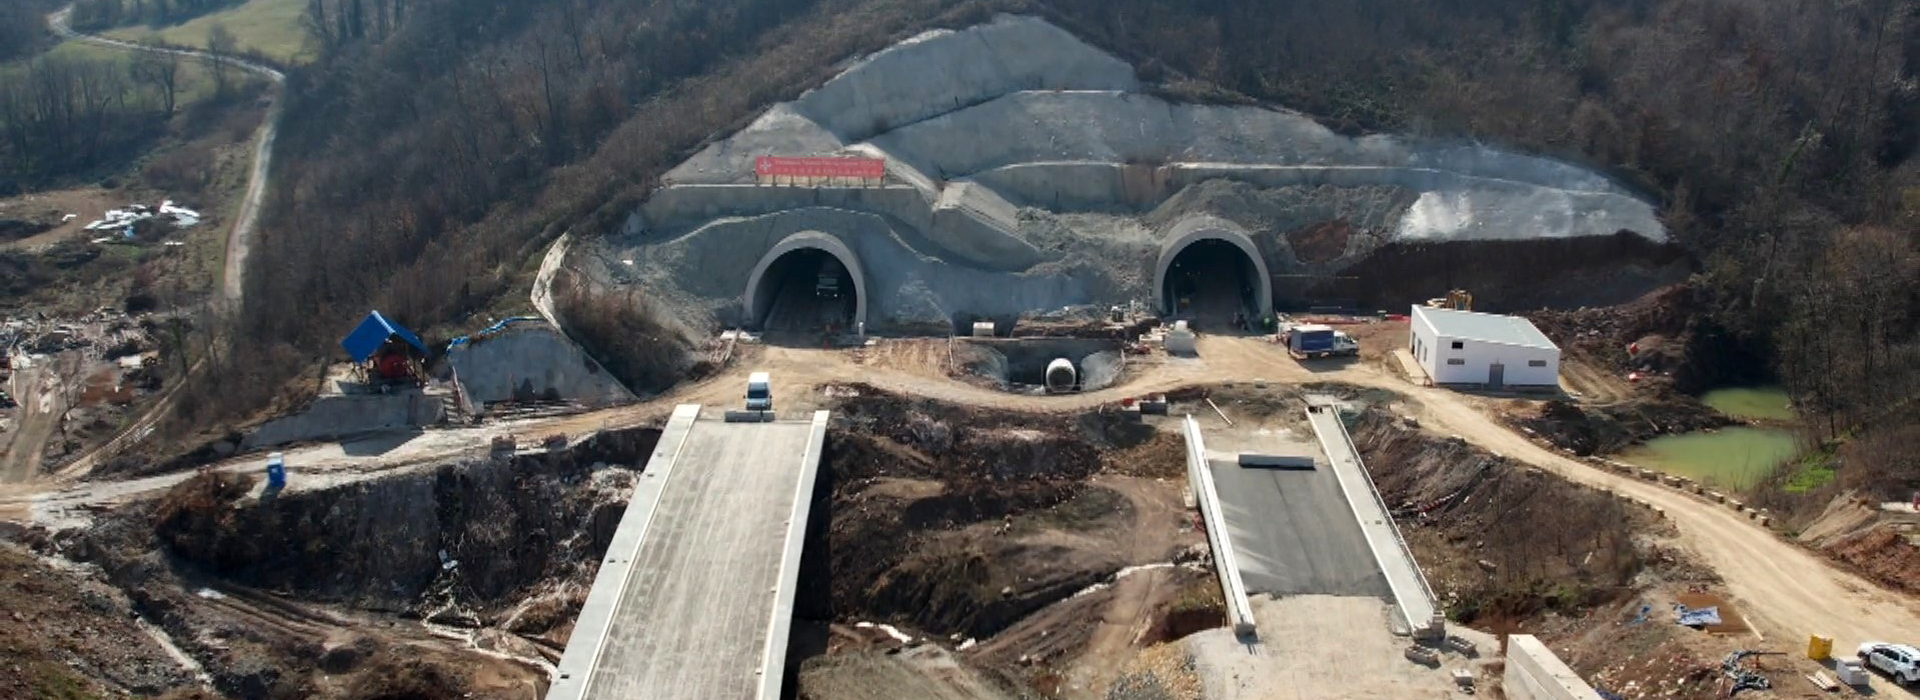 PAKOVRAĆE-POŽEGA - CONSTRUCTION OF THE LAZ TUNNEL